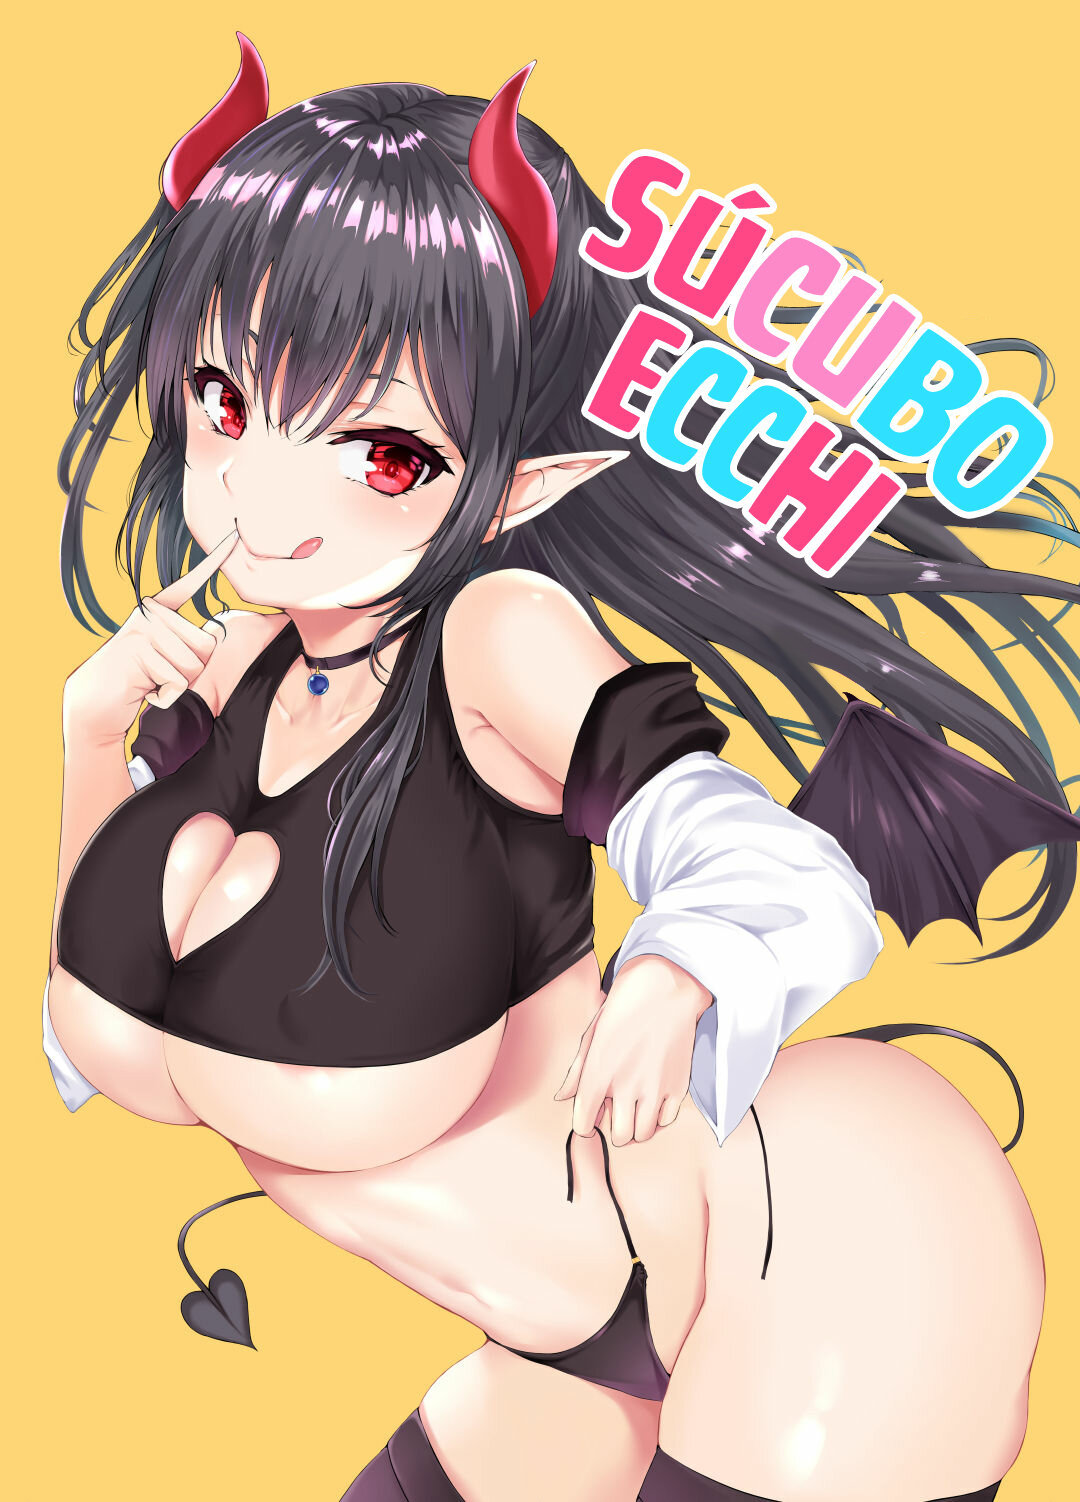 Sucubo Ecchi (Succubus Ecchi) - 0